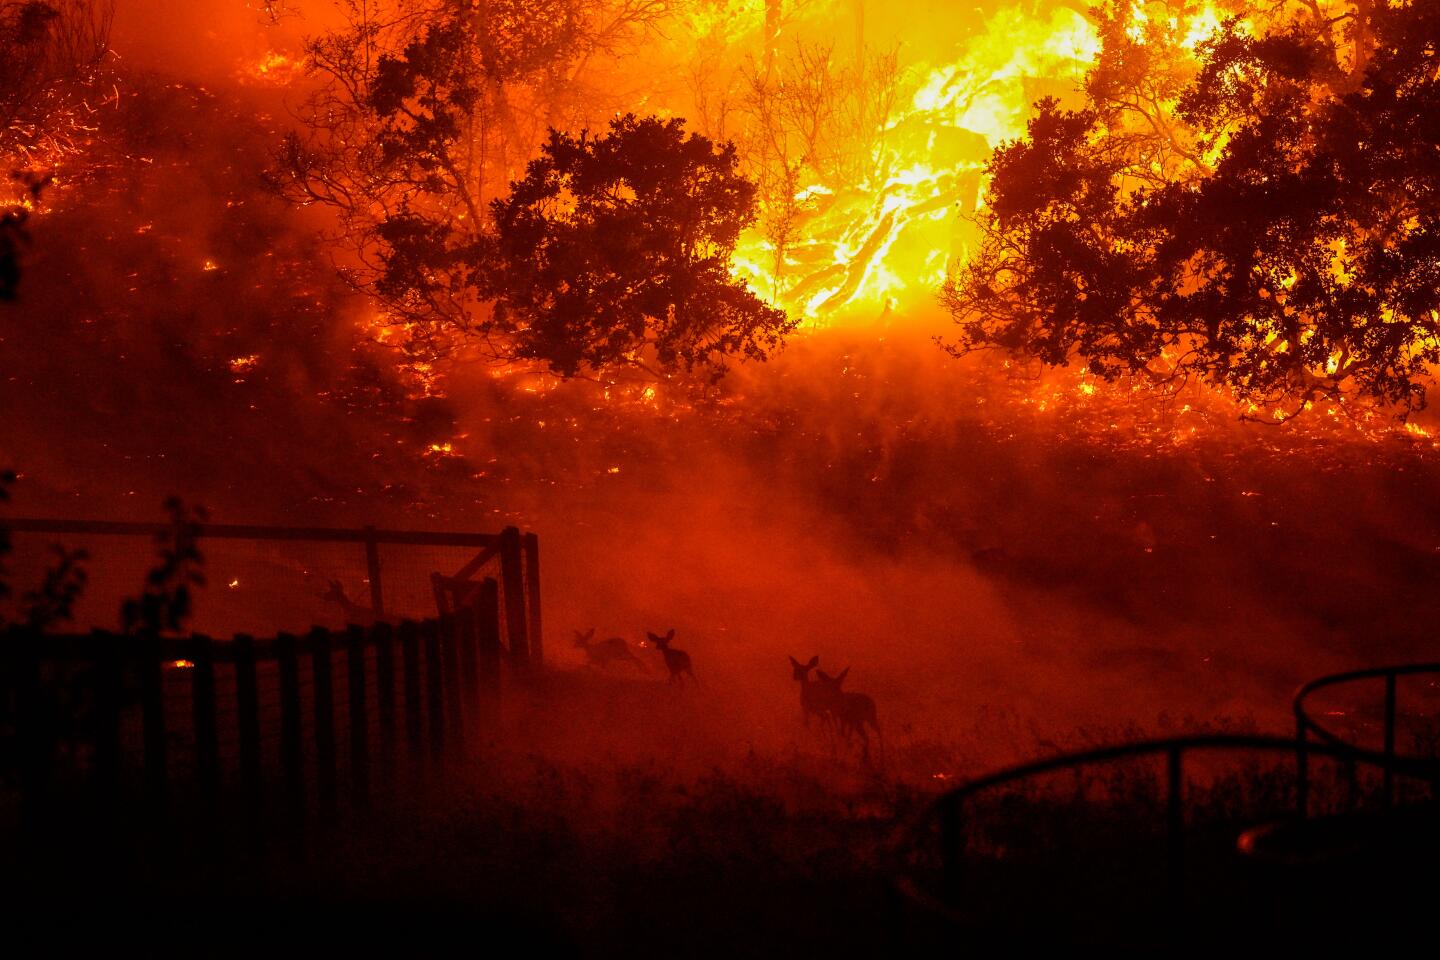 Wildlife runs amid smoke as fire roars in Skyhawk Park.